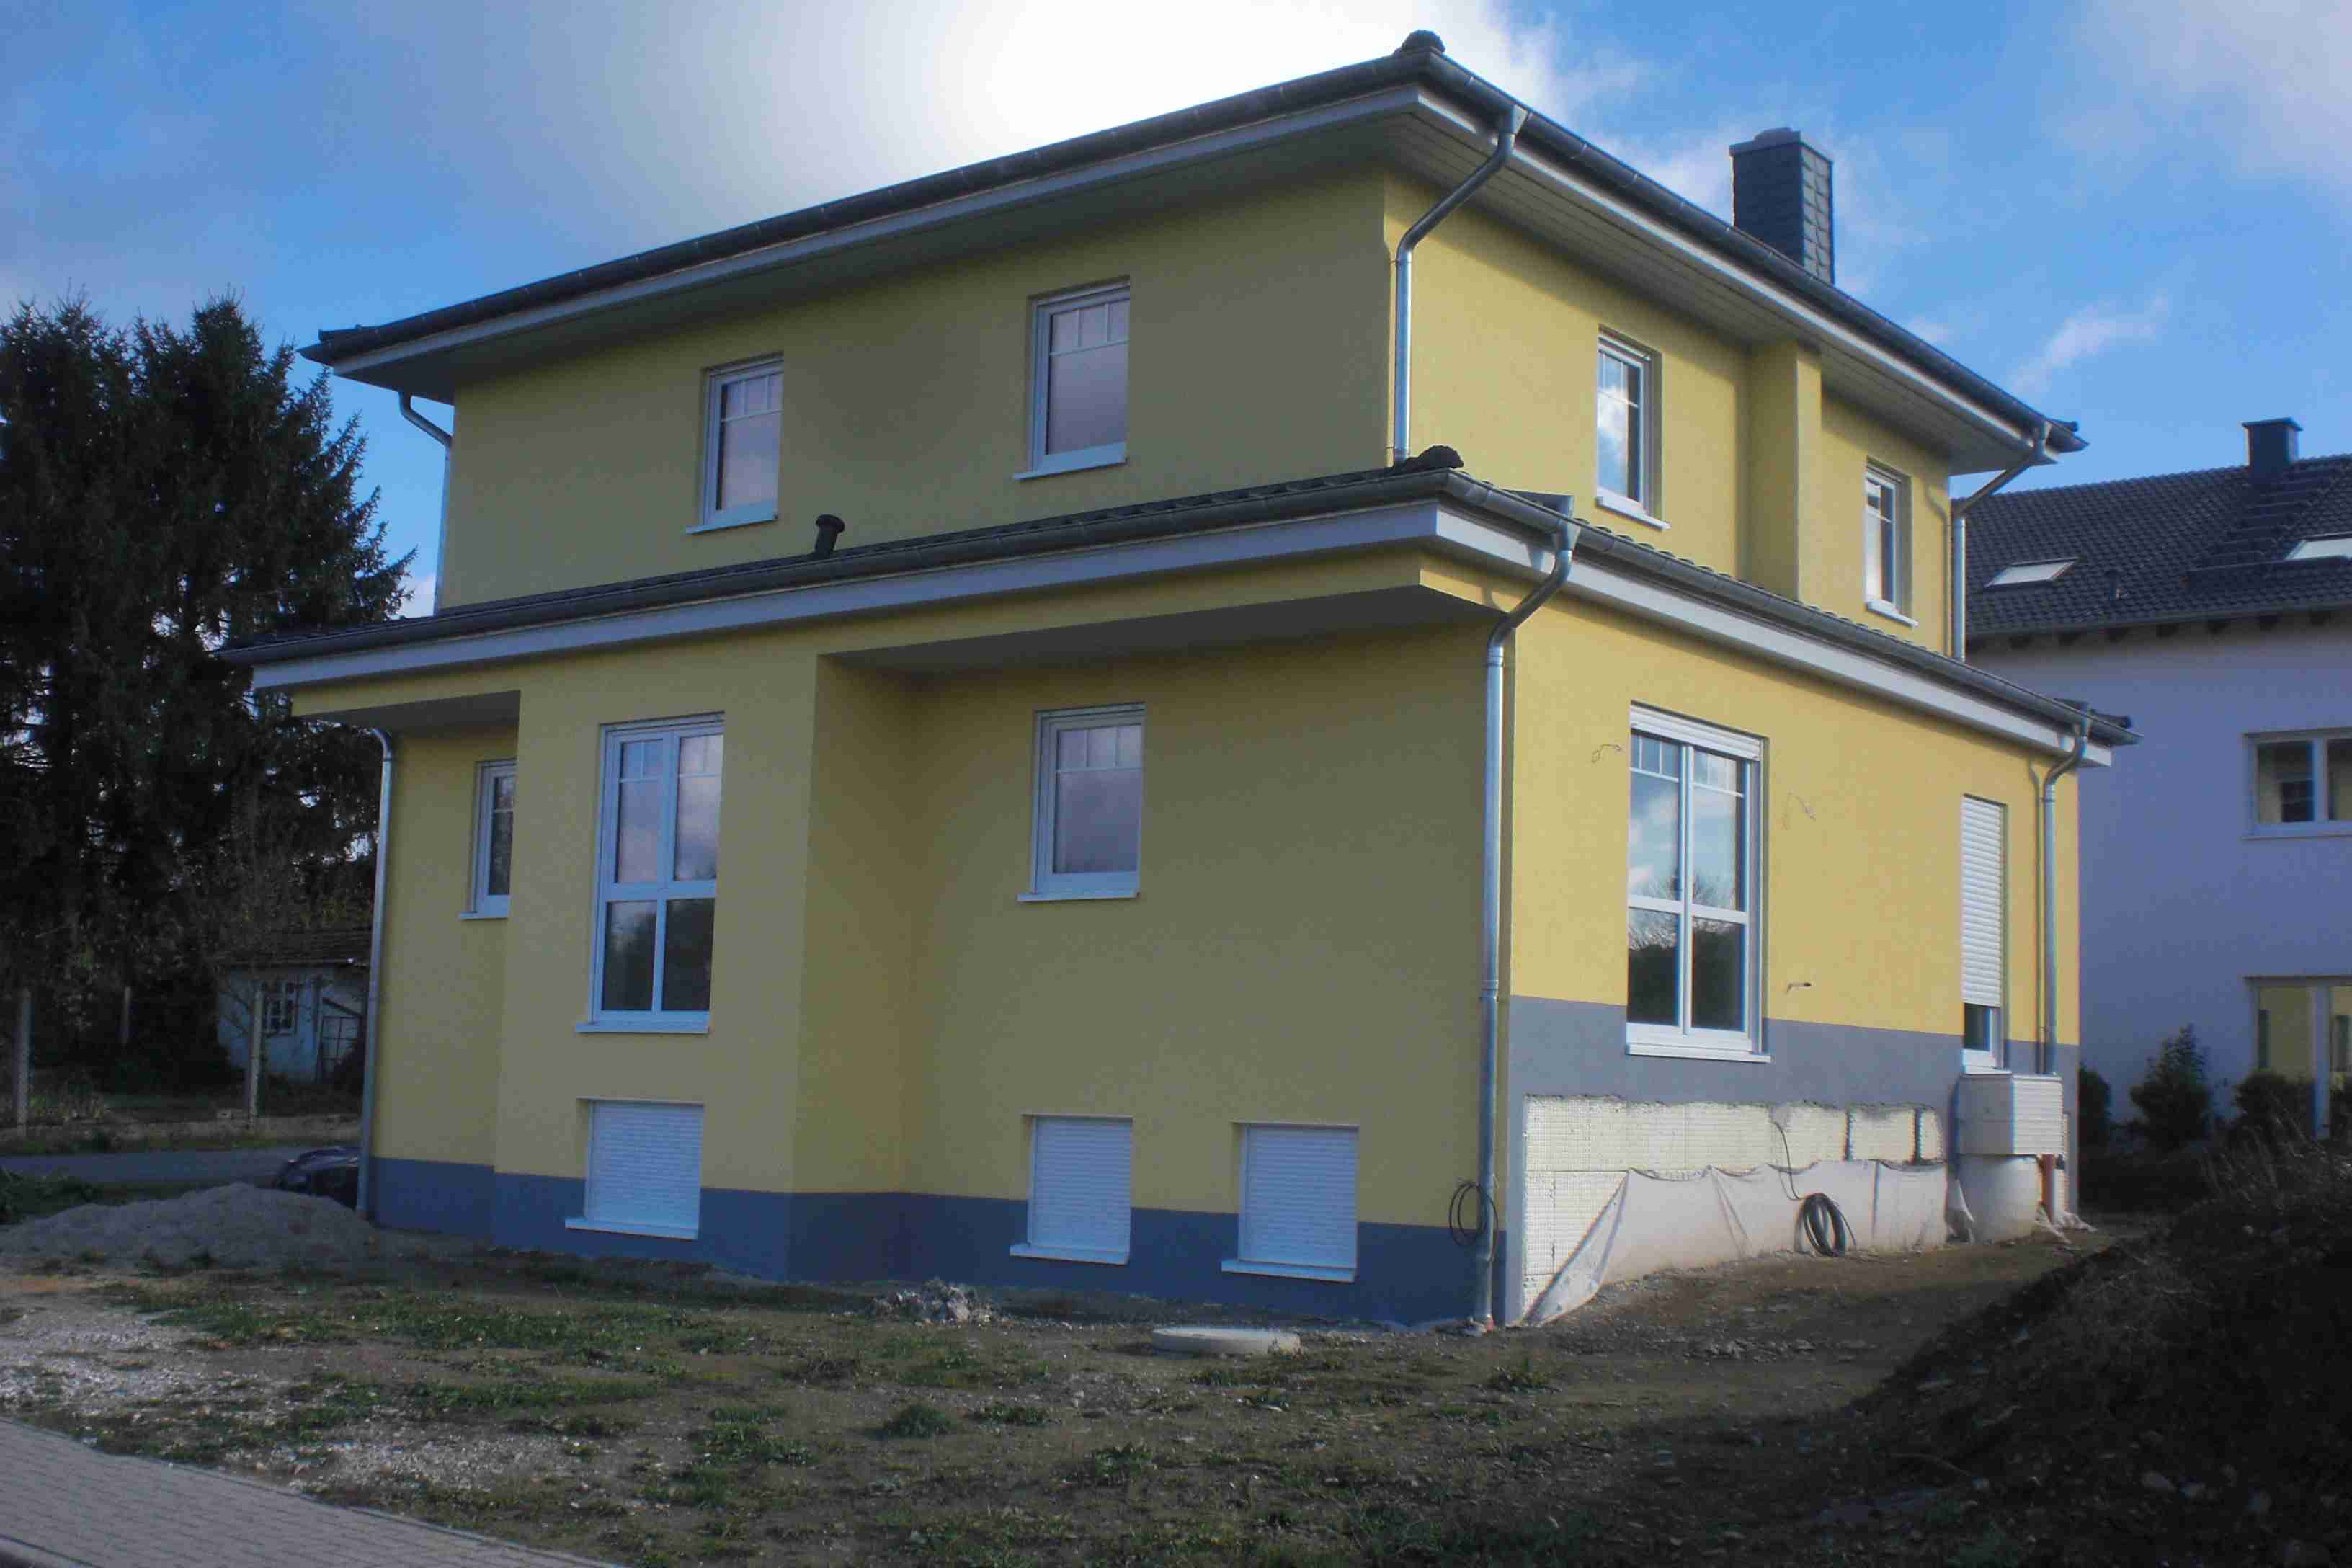 Wohnhaus in Westerfeld